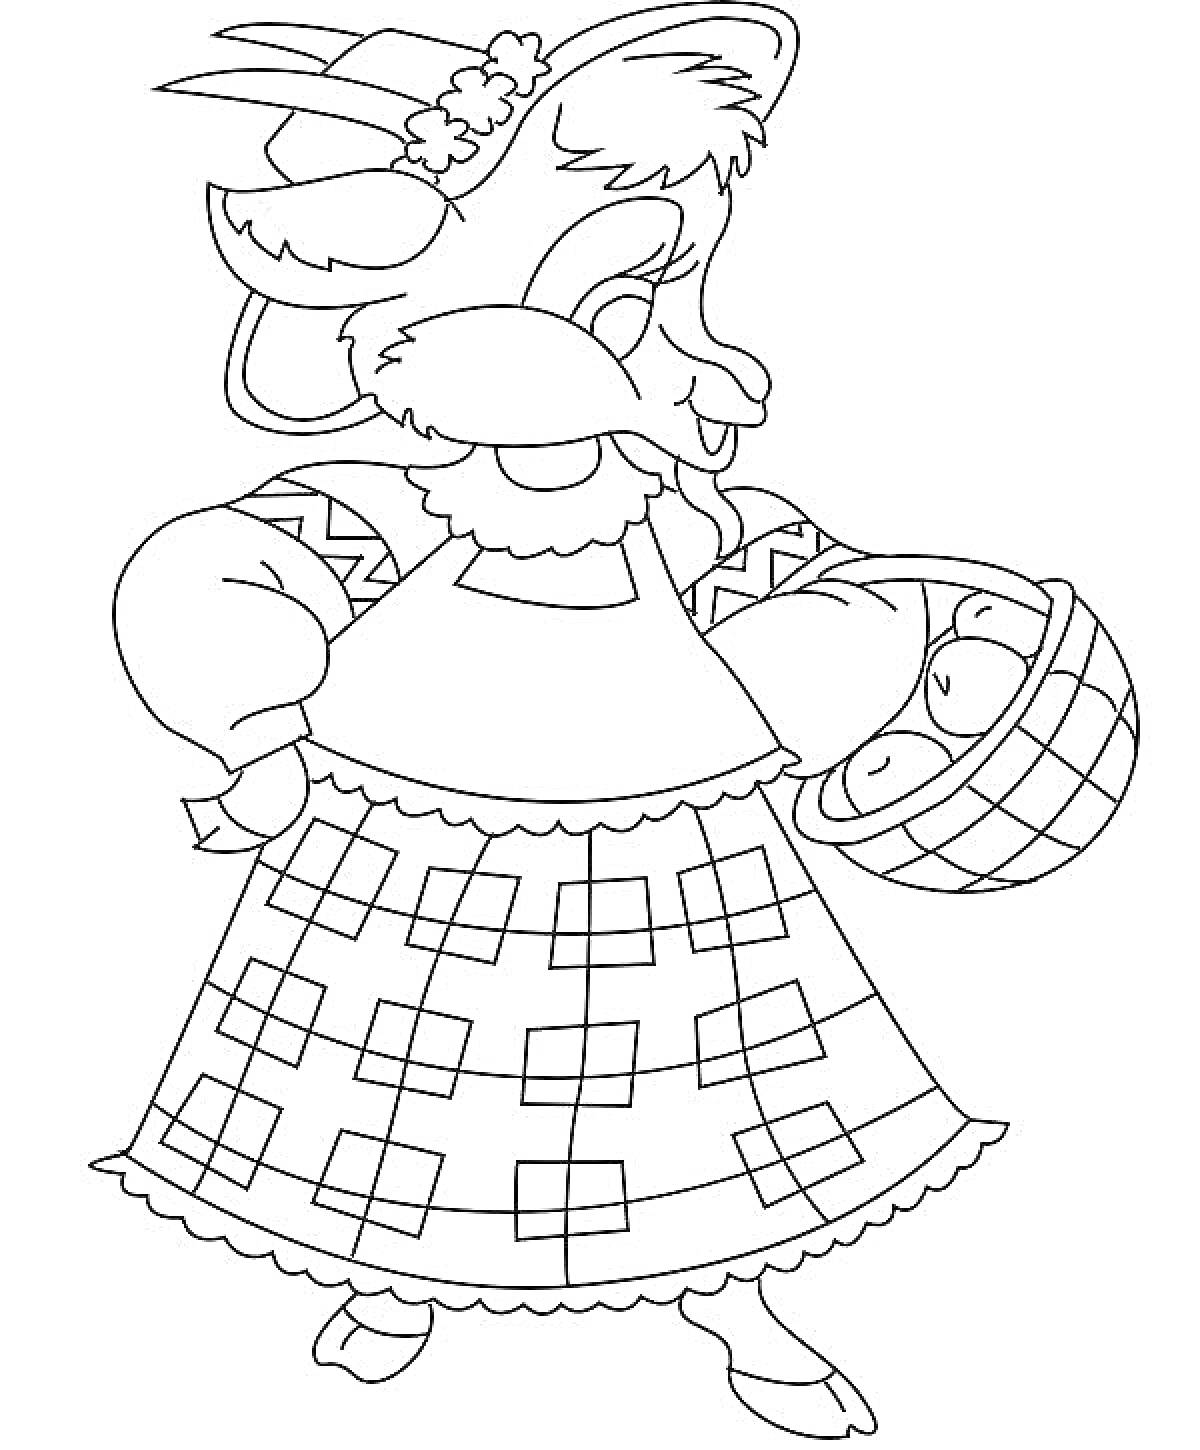 Раскраска Коза в платье с фартуком и корзинкой с яйцами